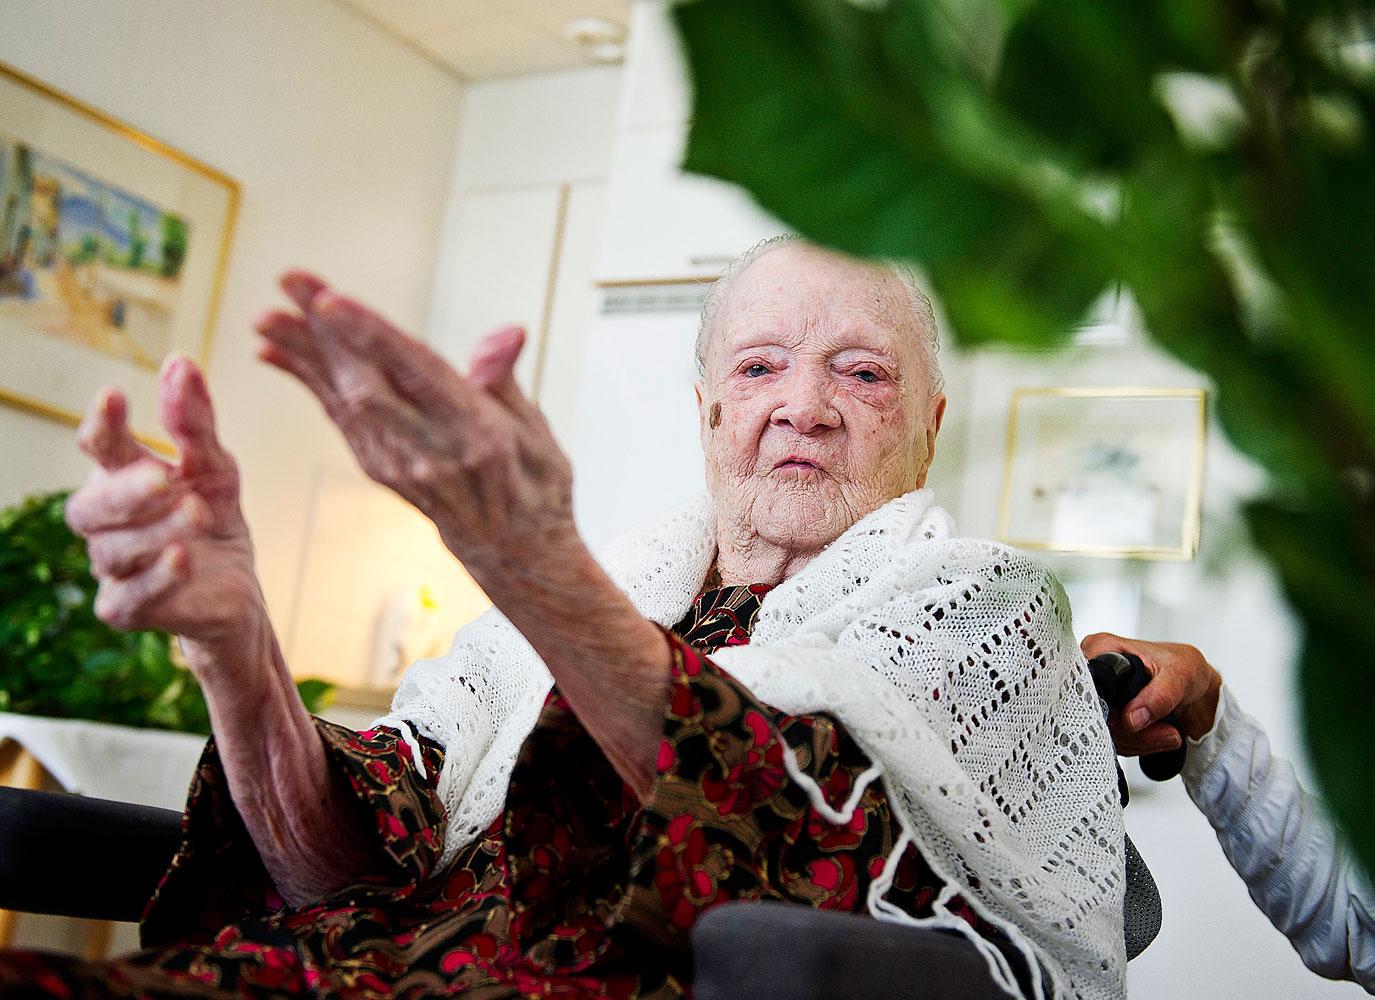 KÖR PÅ MOT 110 ”Ska du skjuta mig nu?” säger Ruth Engström, 109, och skrattar gott när Aftonbladets fotograf höjer kameran. Håret är uppsatt i en liten knut, men Ruth är inte riktigt nöjd: ”Jag skulle önska att jag hade långt och lockigt hår”, säger hon. Om tre månader fyller hon 110 år, men hur hon ska fira är inte bestämt. ”Det får gå som det går”, säger hon.